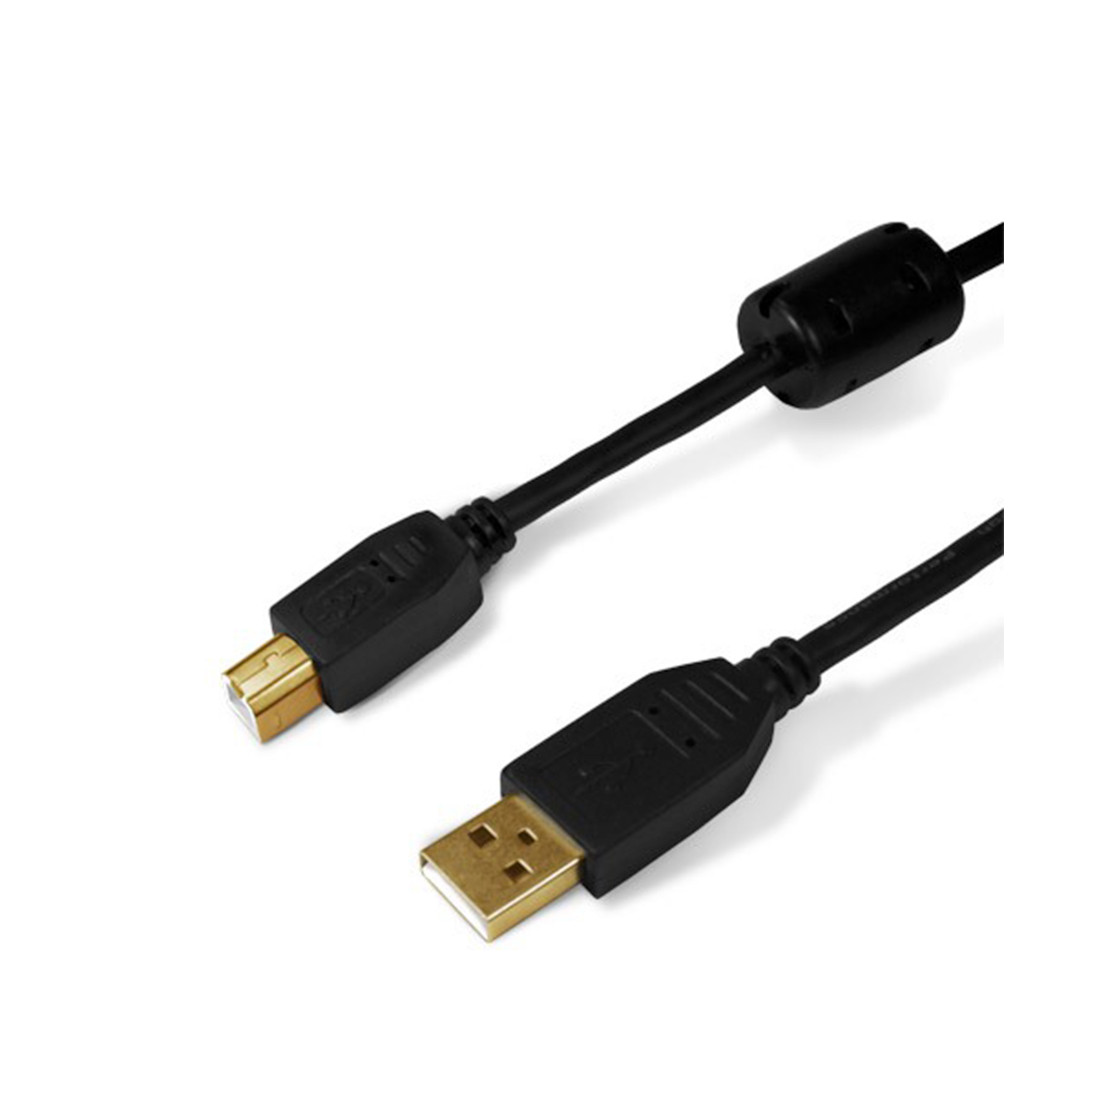 Интерфейсный кабель A-B SHIP SH7013-1.5B Hi-Speed USB 2.0 30В, фото 1